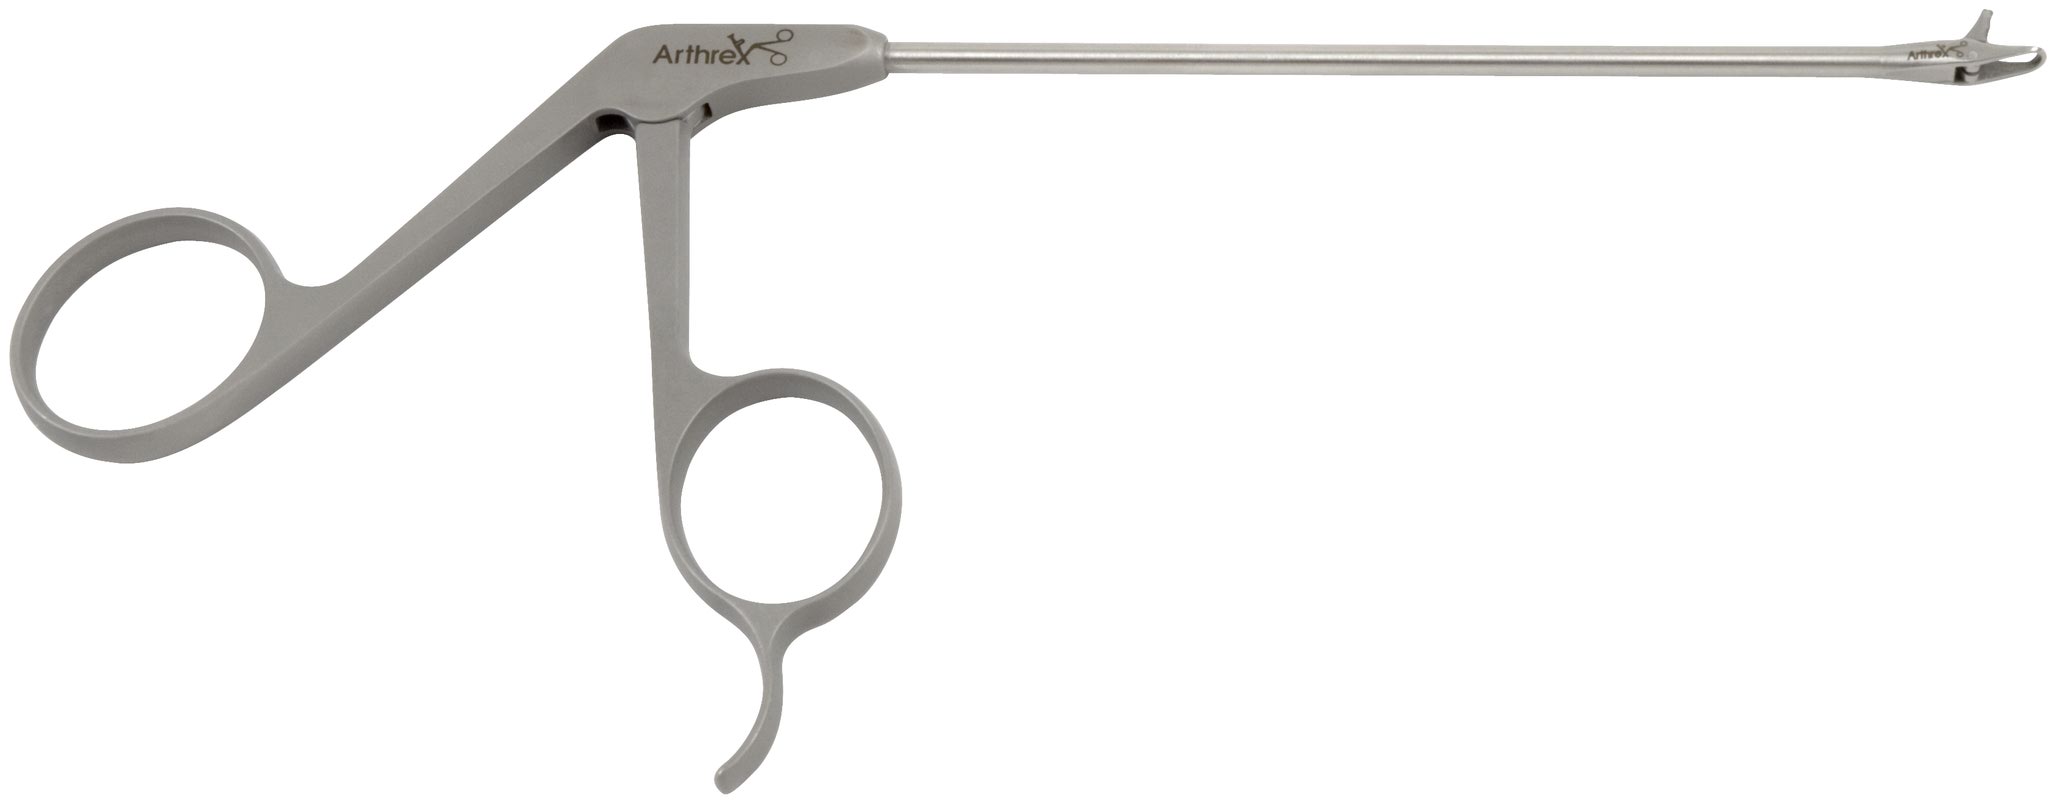 Arthrex - Punch, Medium 45° Right Angled Tip, ø3.4 mm Straight 